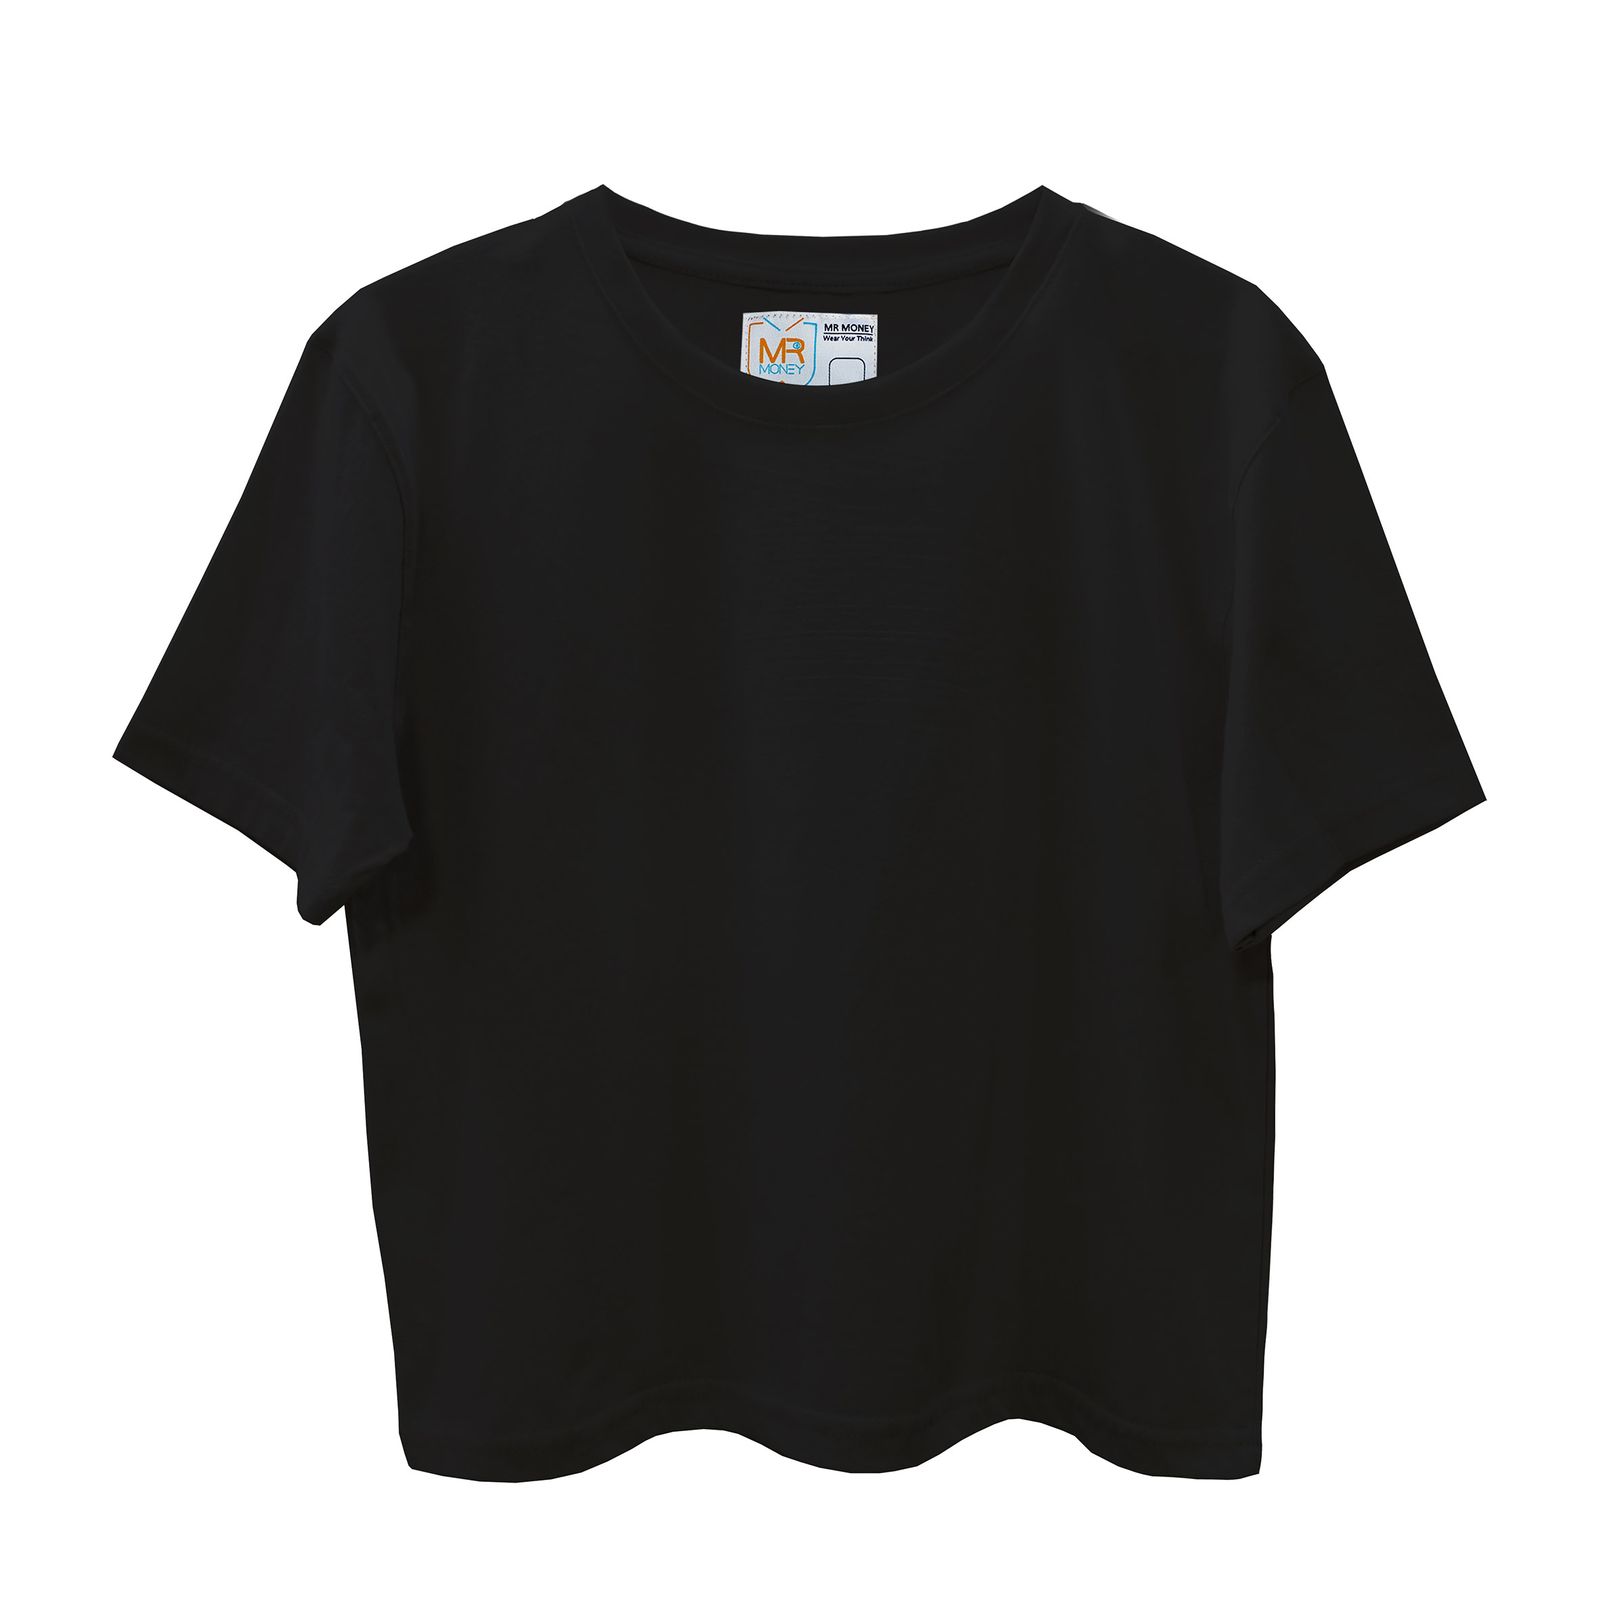 تی شرت آستین کوتاه زنانه مسترمانی مدل ساده کد 402-KM -  - 1